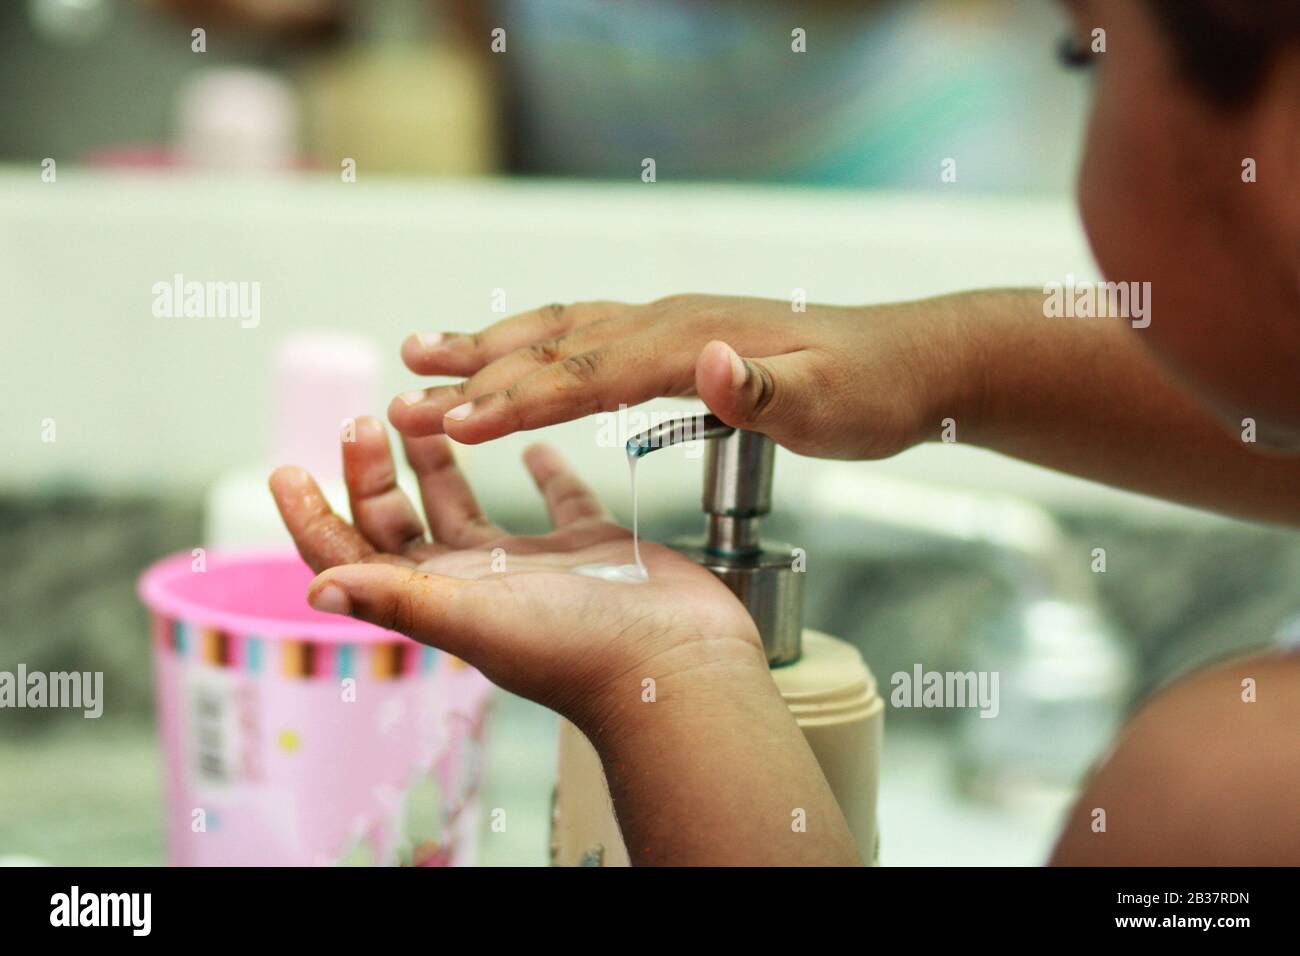 Lávese las manos, un hombre se lava las manos bajo el grifo con agua y jabón. Un hombre enjuagando sus manos bajo el agua que fluye Foto de stock